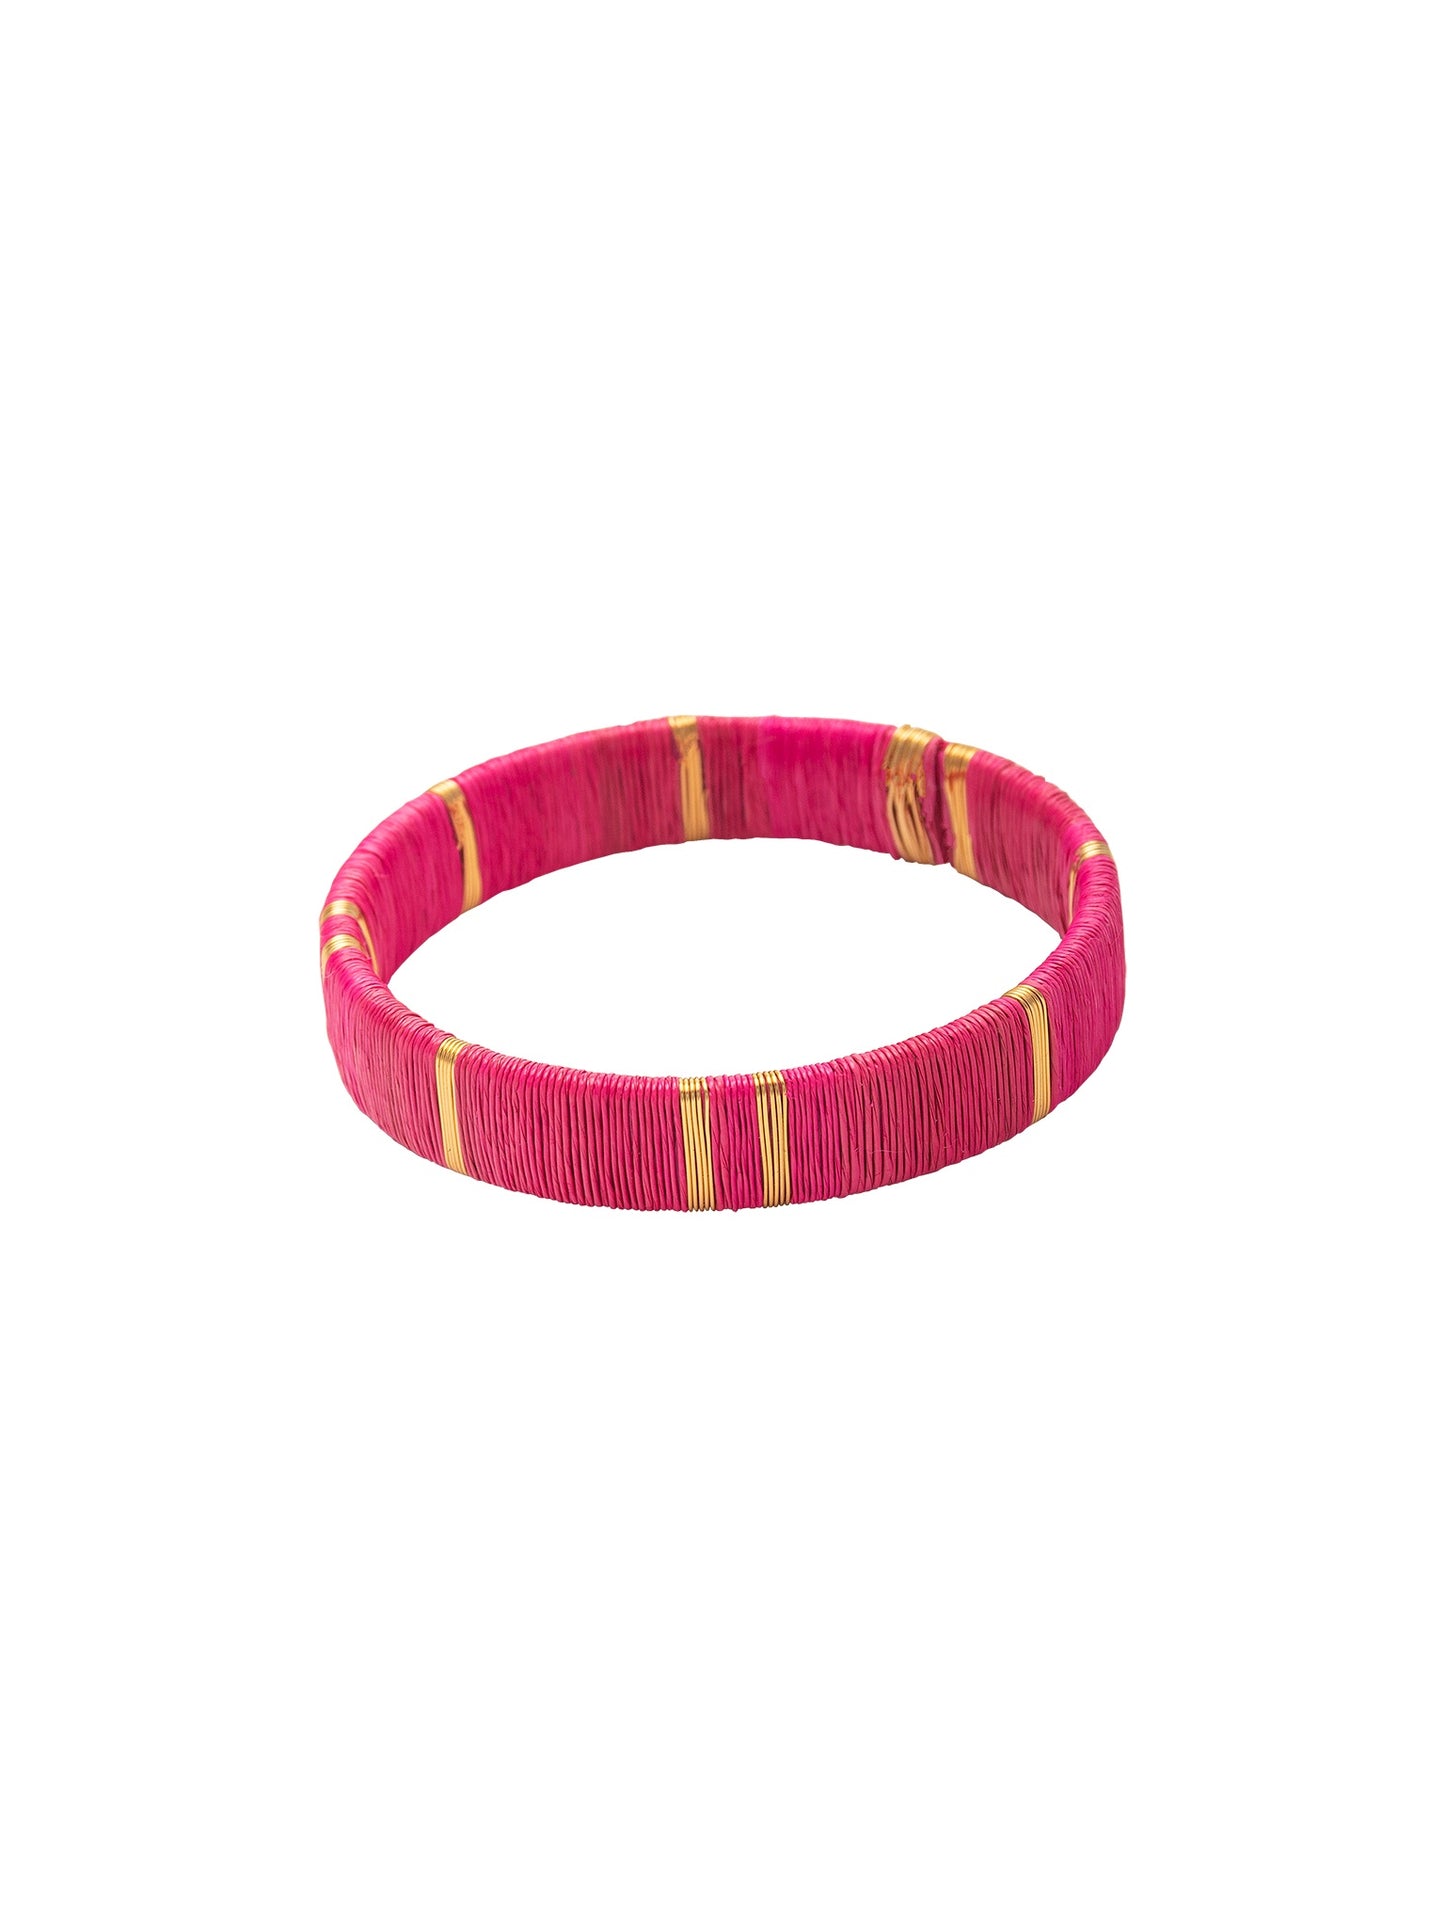 Juaca Bracelets in hyper pink by Bamboleira